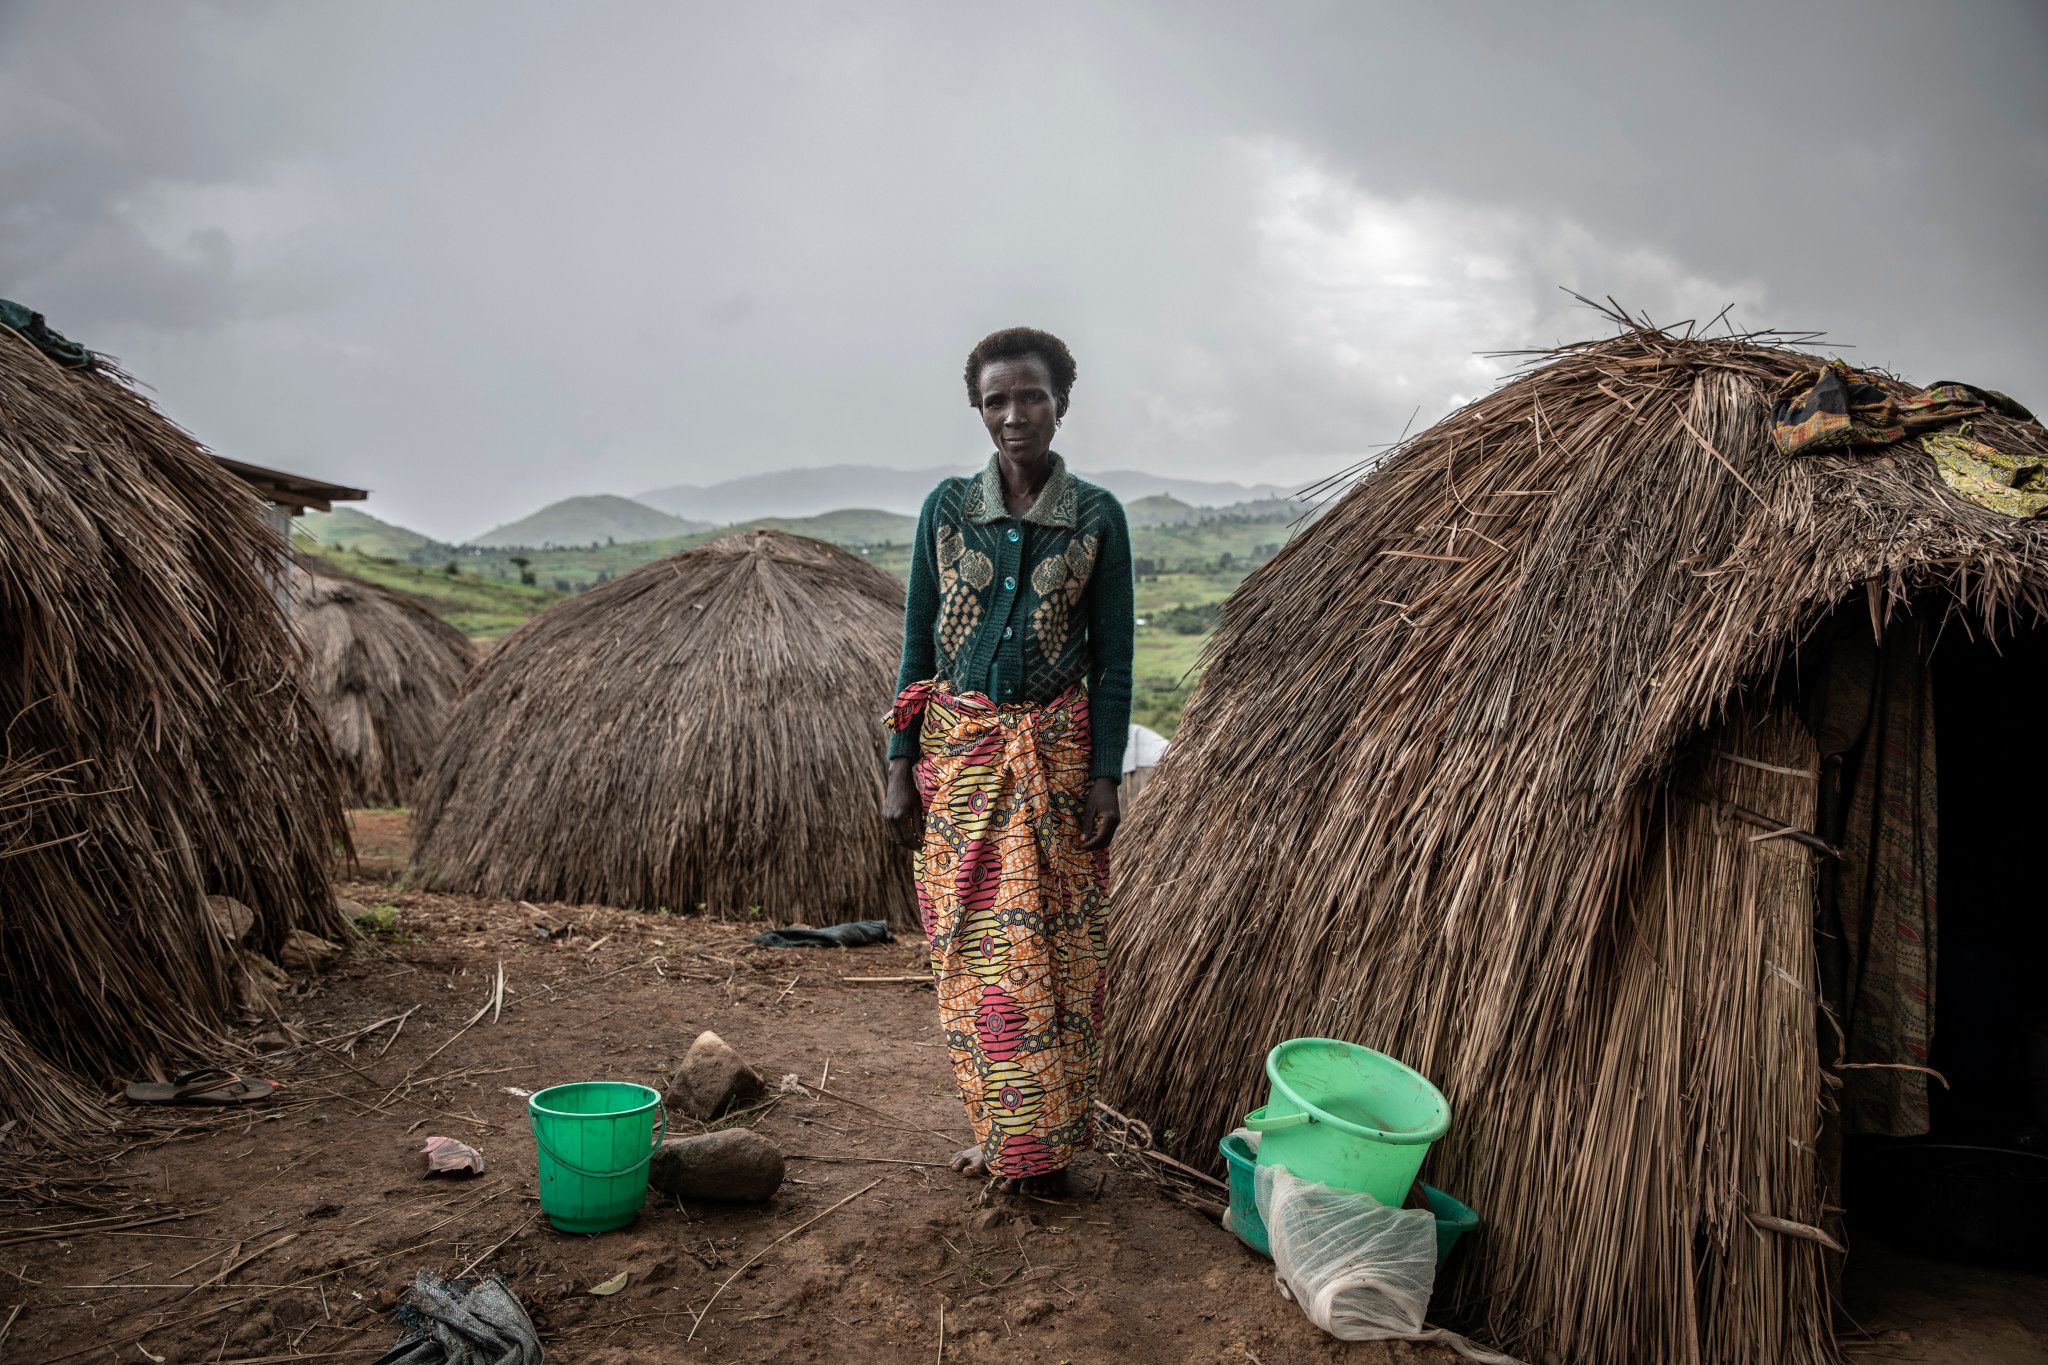 Site Kambe, province de l'Ituri, mai 2021. Jeanne Borive, 45 ans et huit enfants, a été séparée de son mari lorsqu’elle a fui son village de Lithe il y a deux ans et demi. Elle vit dans un camp de la communauté Hema, déplacée par les attaques des milices Lendu sur le territoire de Djugu. Elle a passé quatre heures à ramasser du bois pour cuisiner et vendre sur le marché local. « S’il y a la paix, je retourne chez moi. Sinon, je reste ici », affirme-t-elle.